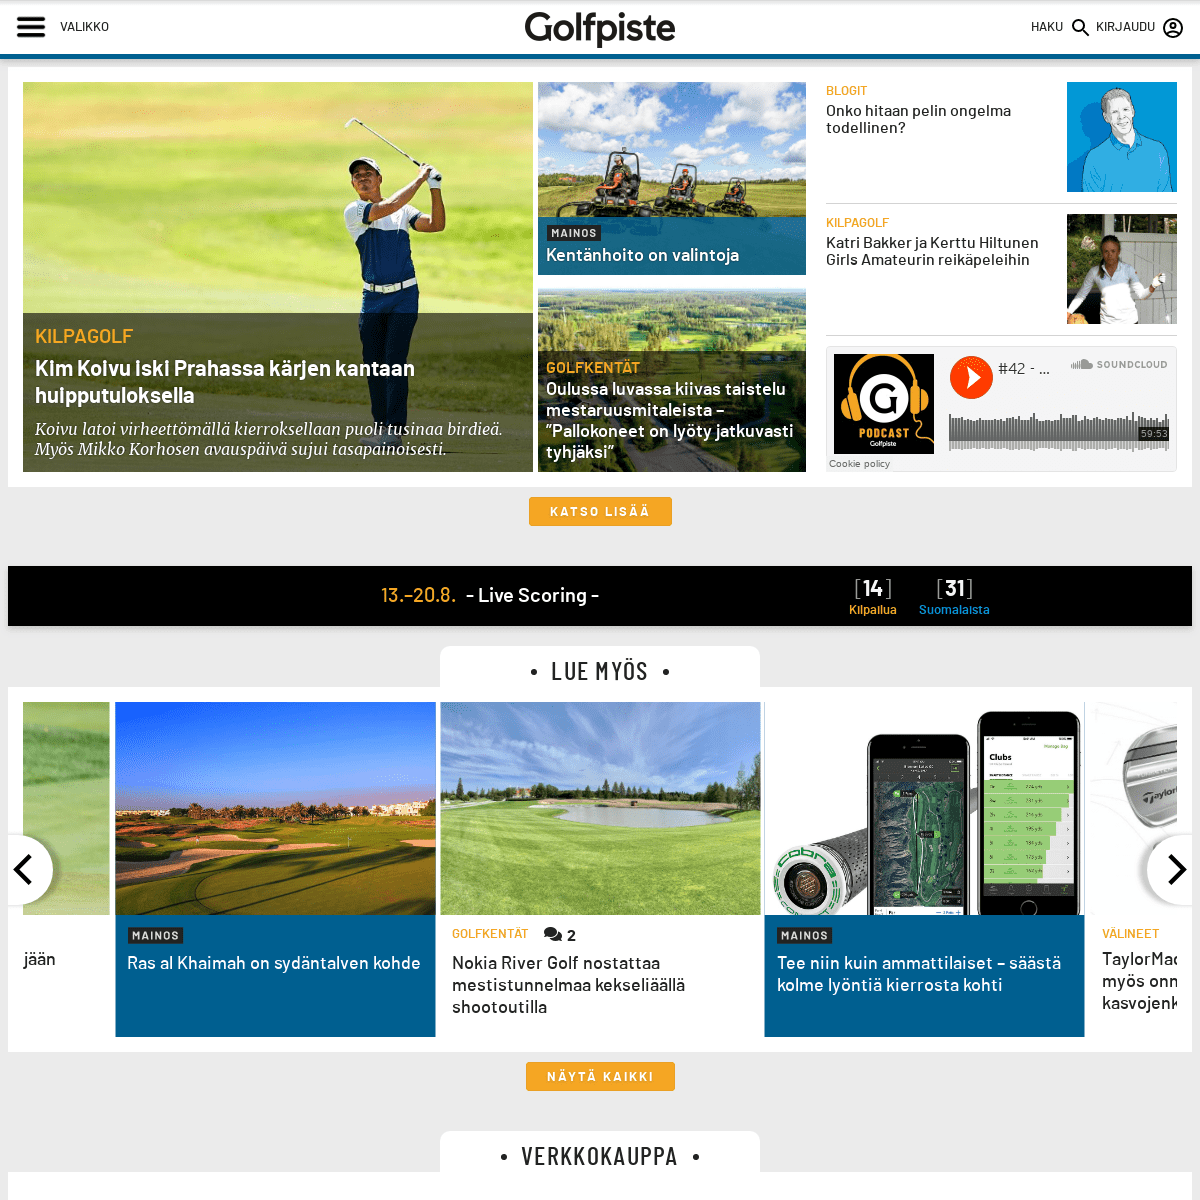 Golfpiste.com - Golfpiste.com